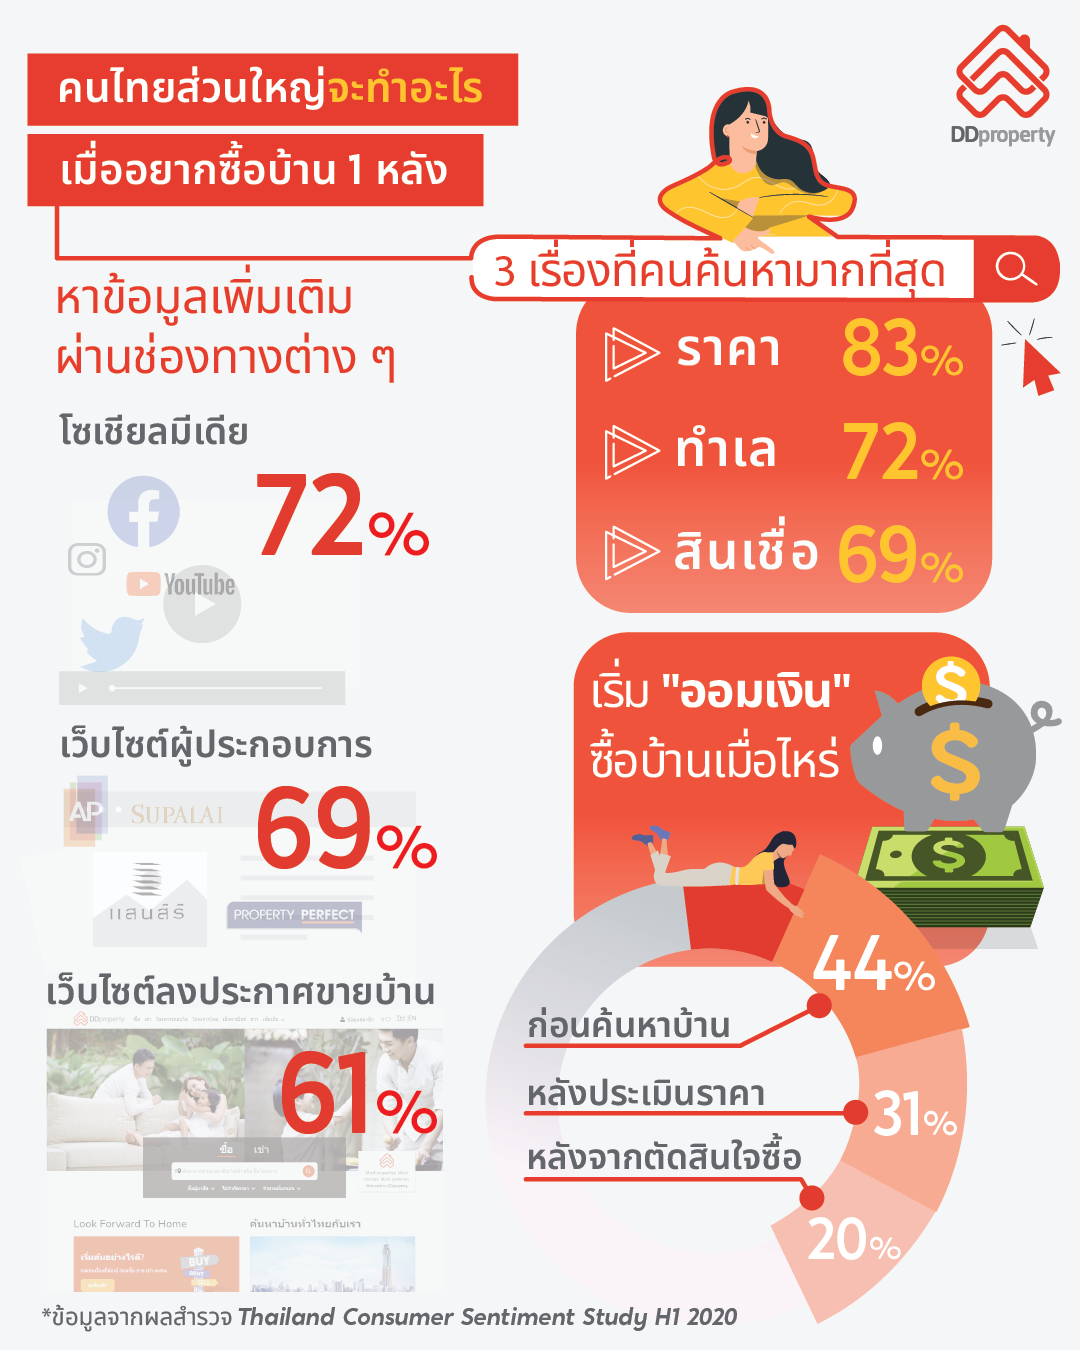 ดีดีพร็อพเพอร์ตี้ เผยโซเชียลมีเดียมาแรงอันดับหนึ่ง คนไทยใช้หาบ้านกว่า 72%